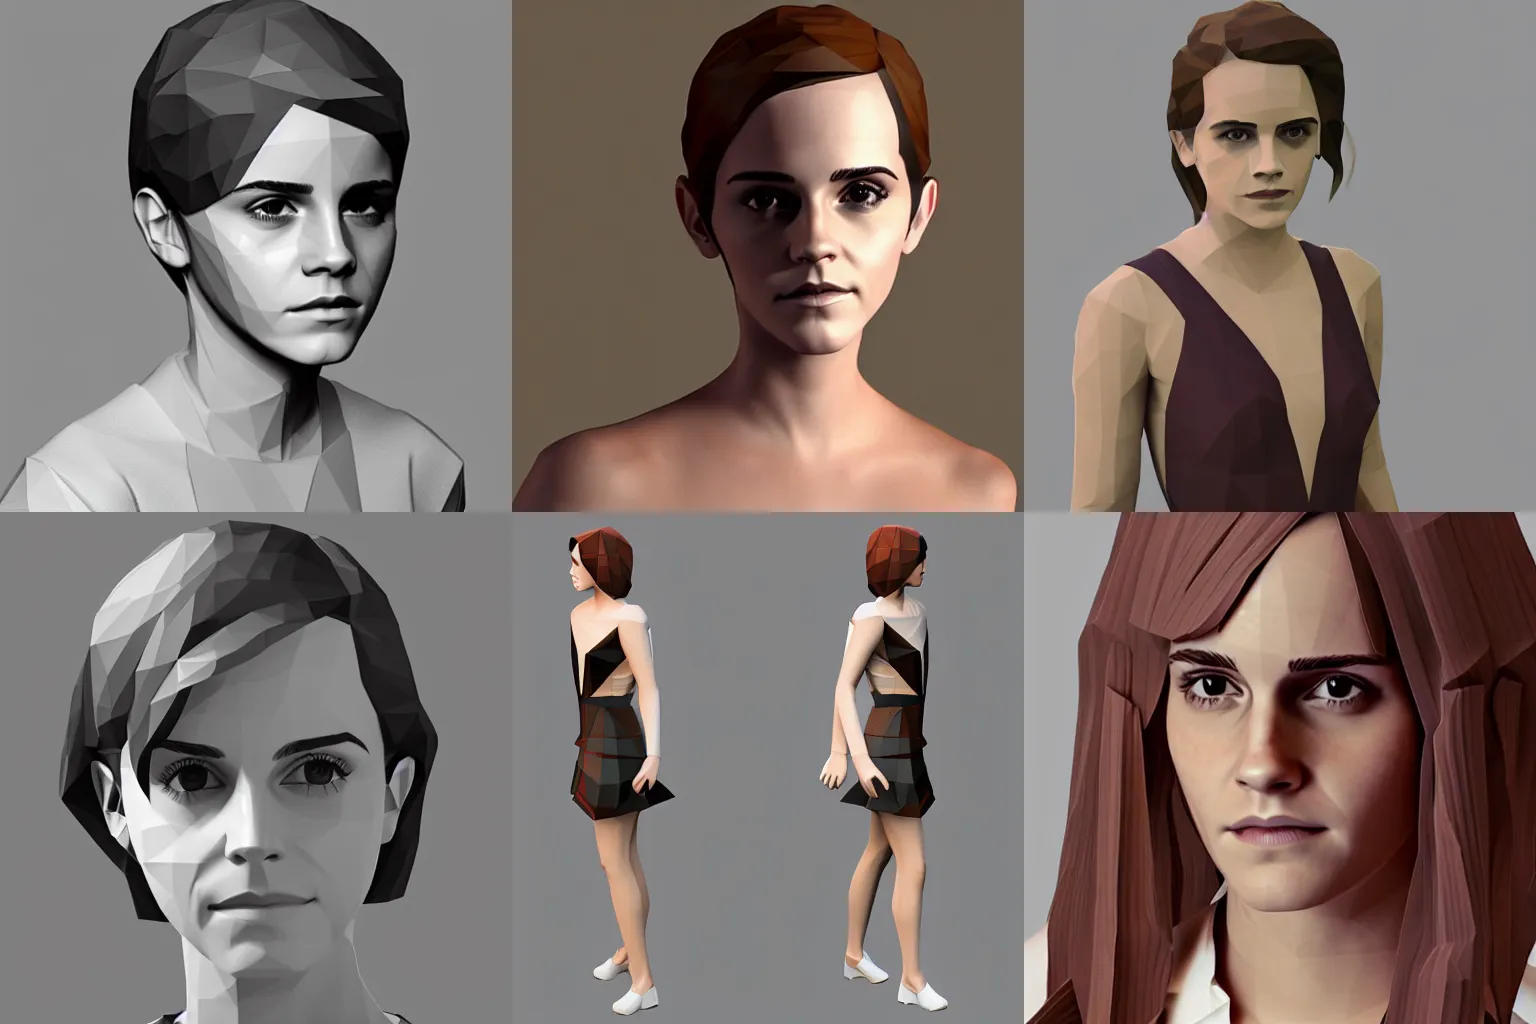 Prompt: Emma Watson lowpoly 3D render